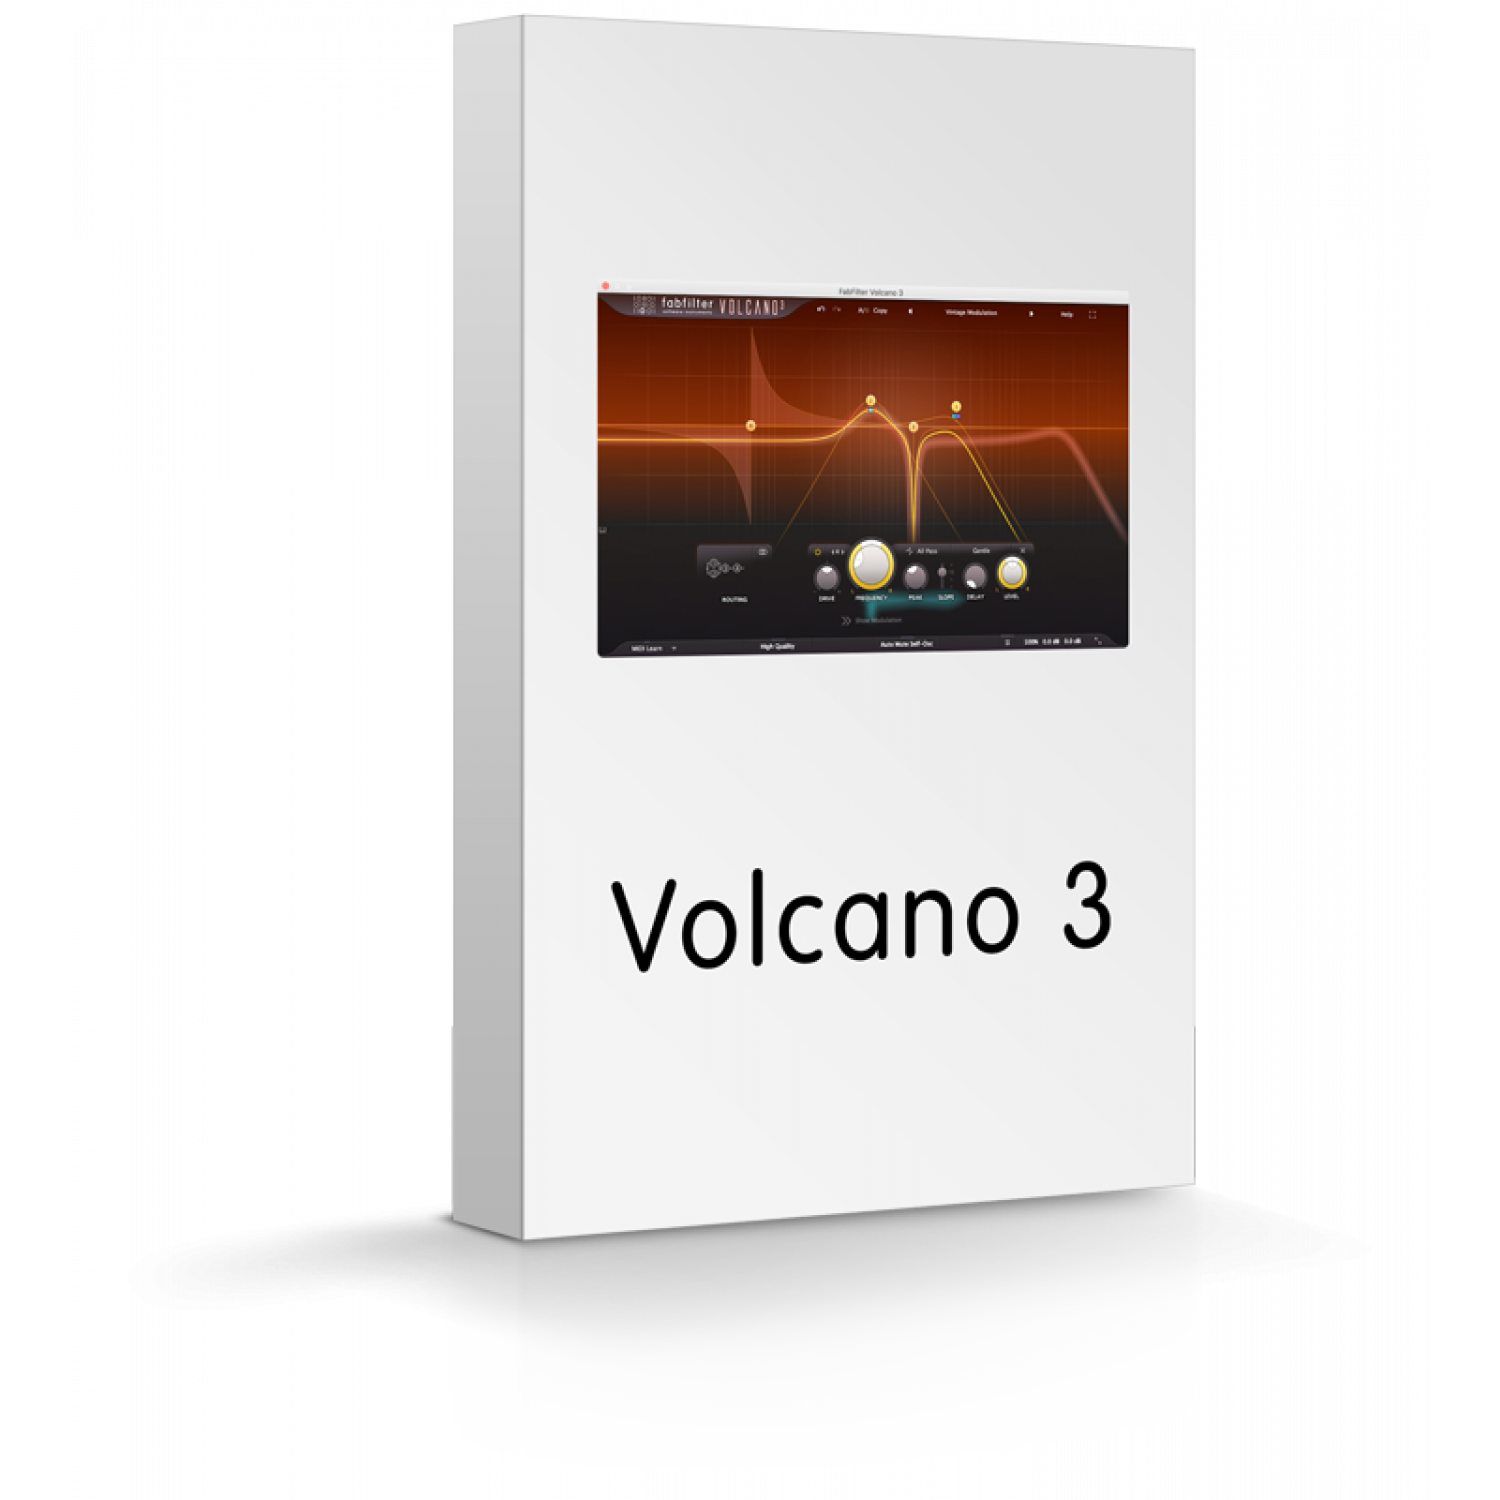 fabfilter volcano video